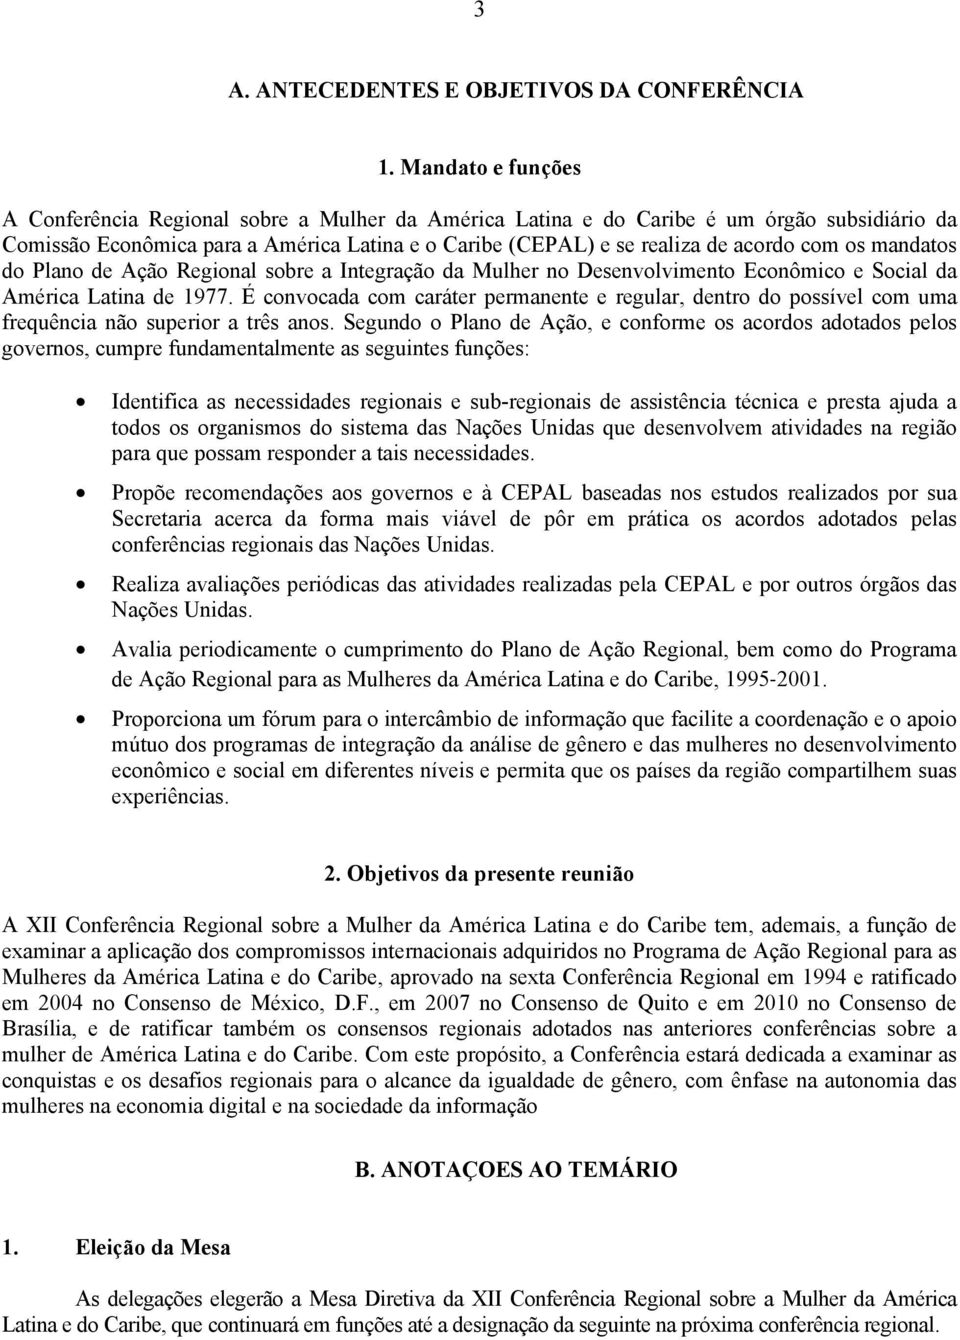 os mandatos do Plano de Ação Regional sobre a Integração da Mulher no Desenvolvimento Econômico e Social da América Latina de 1977.